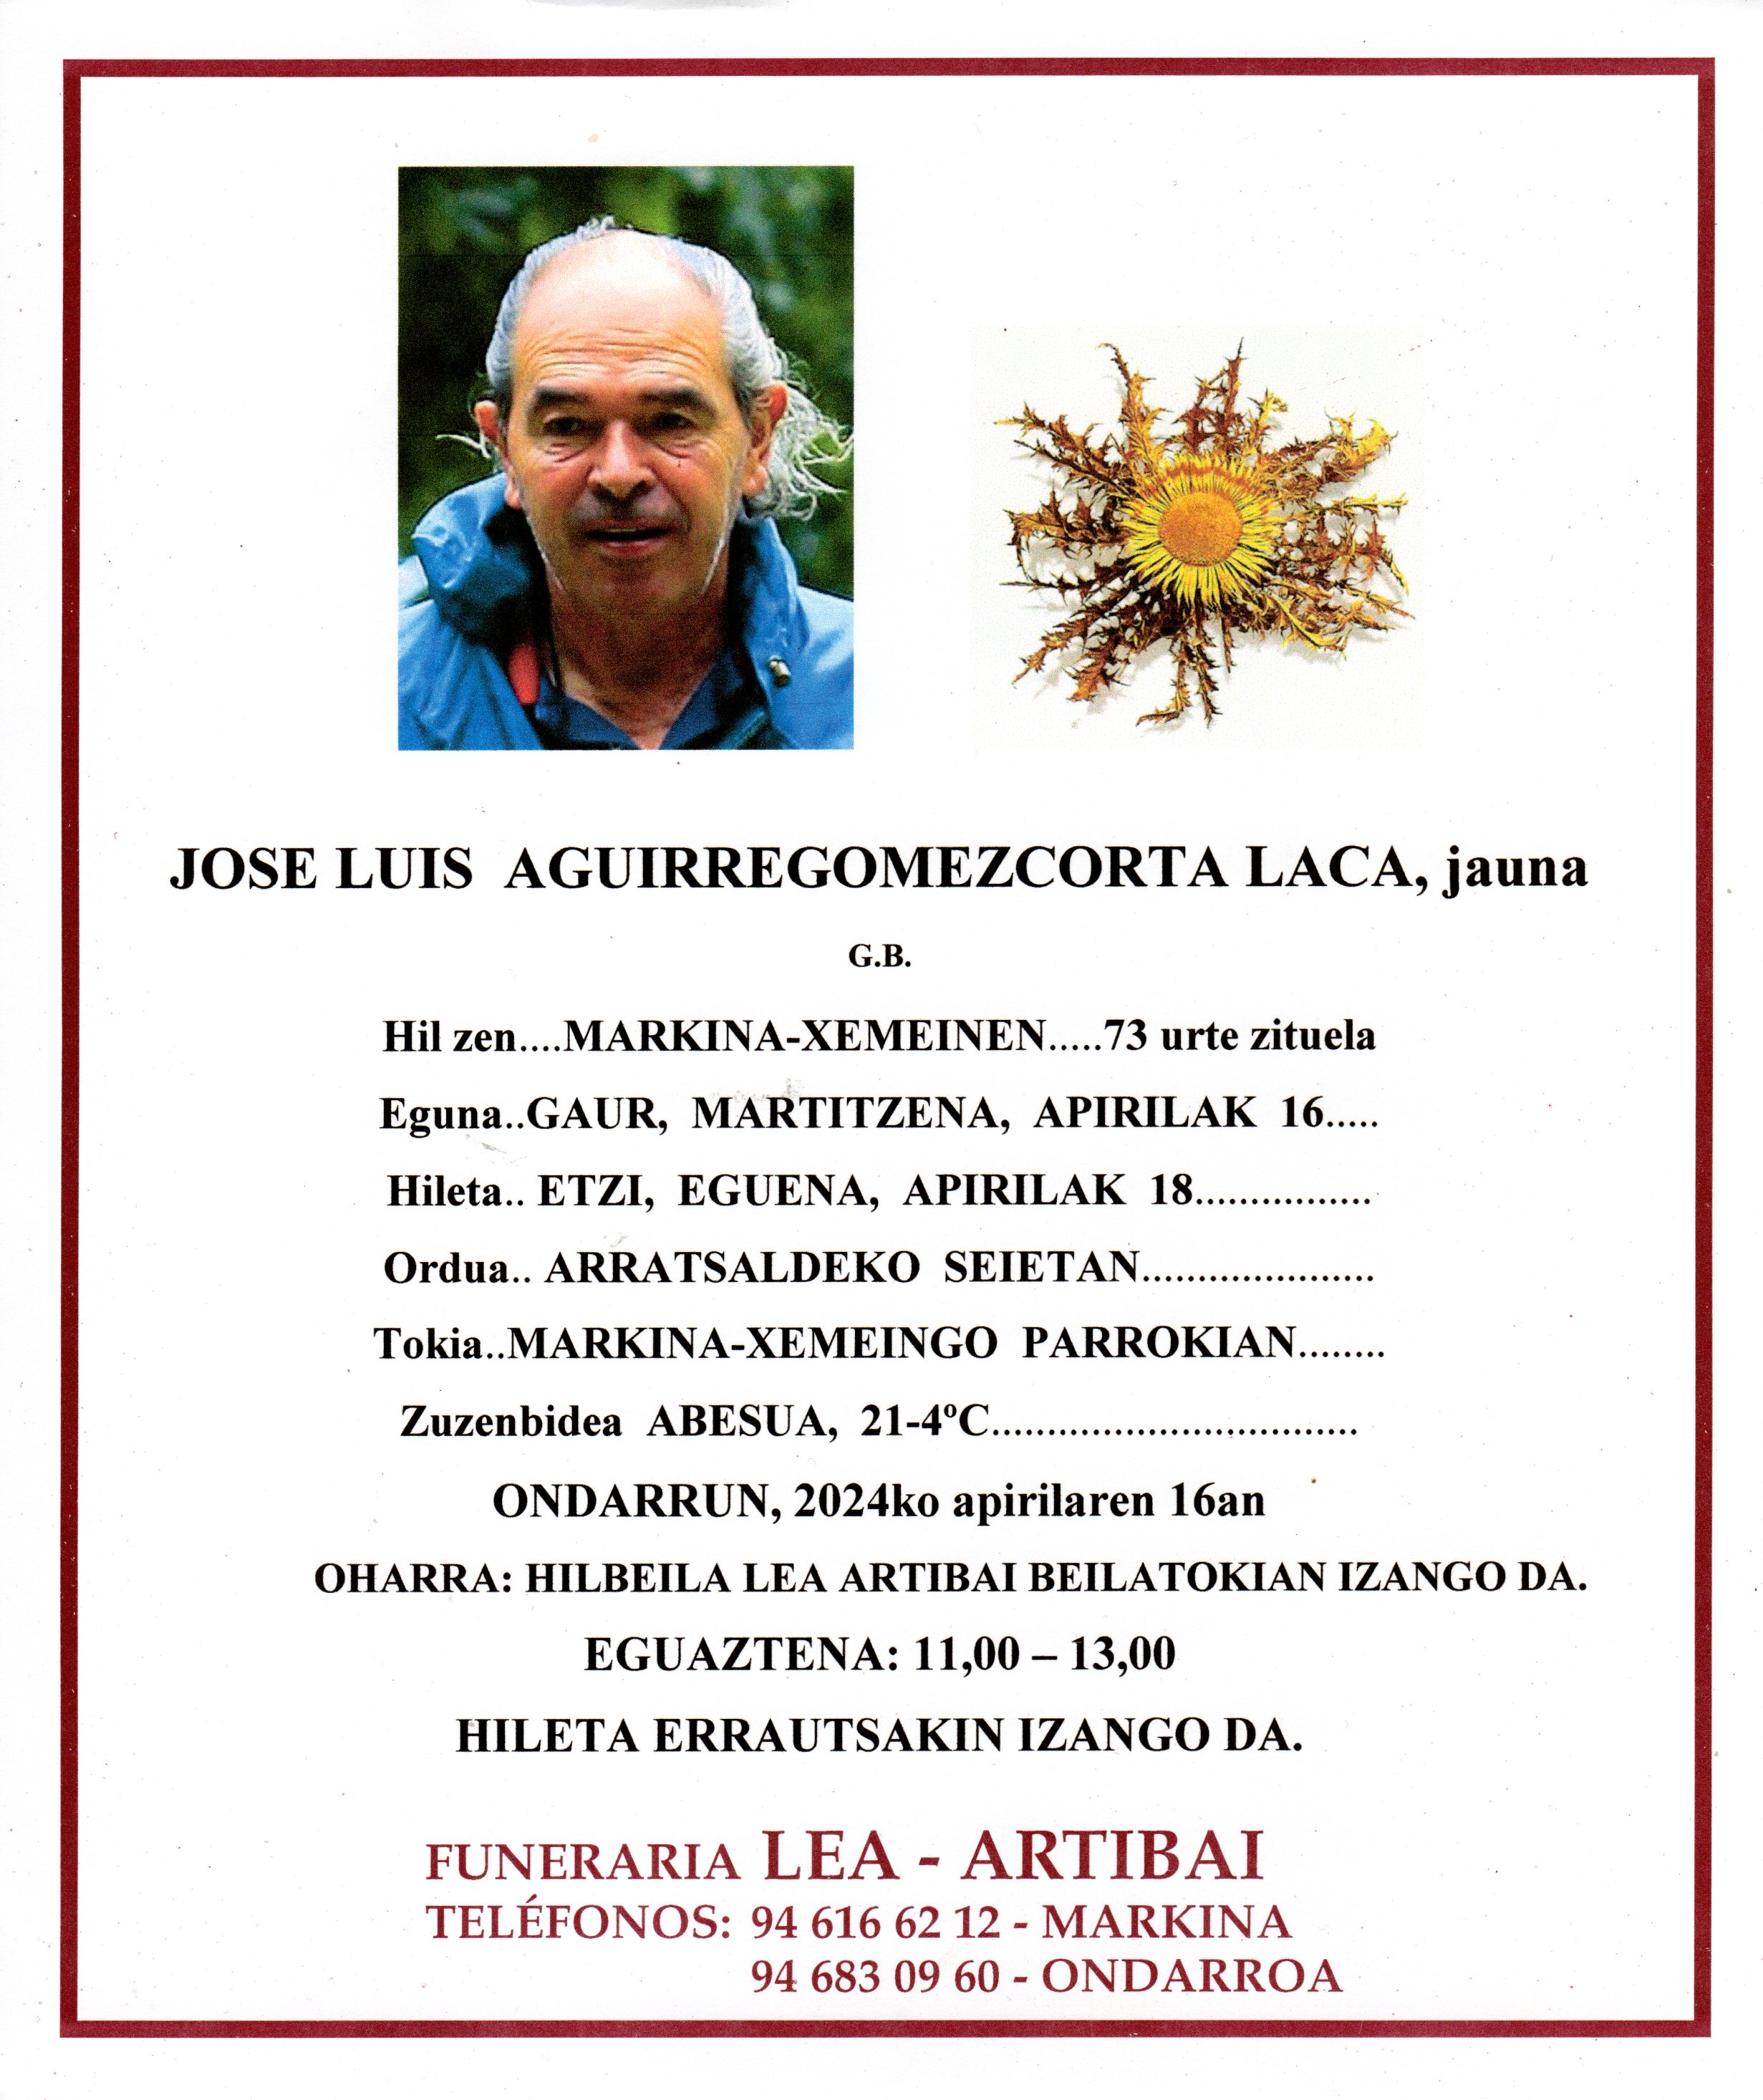 Jose Luis Aguirregomezcorta Laca